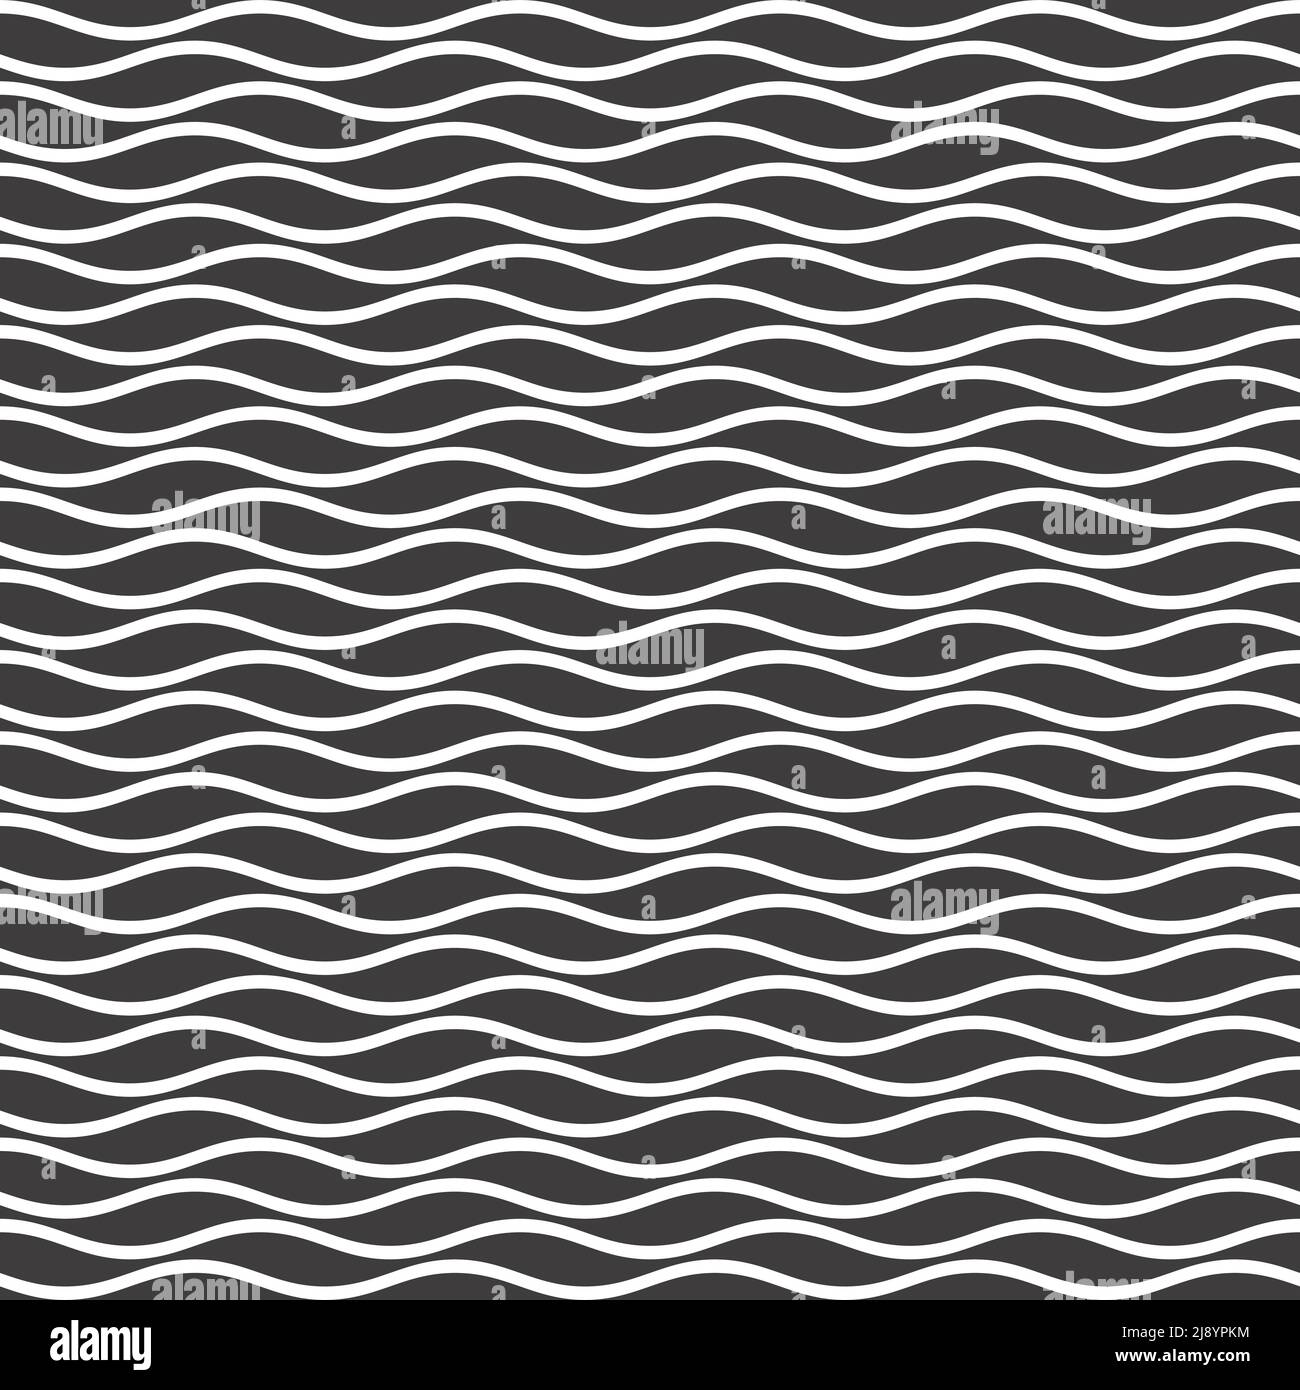 Linee ondulate sfondo senza giunture in bianco e nero. Modello vettoriale a tessere. Illustrazione Vettoriale